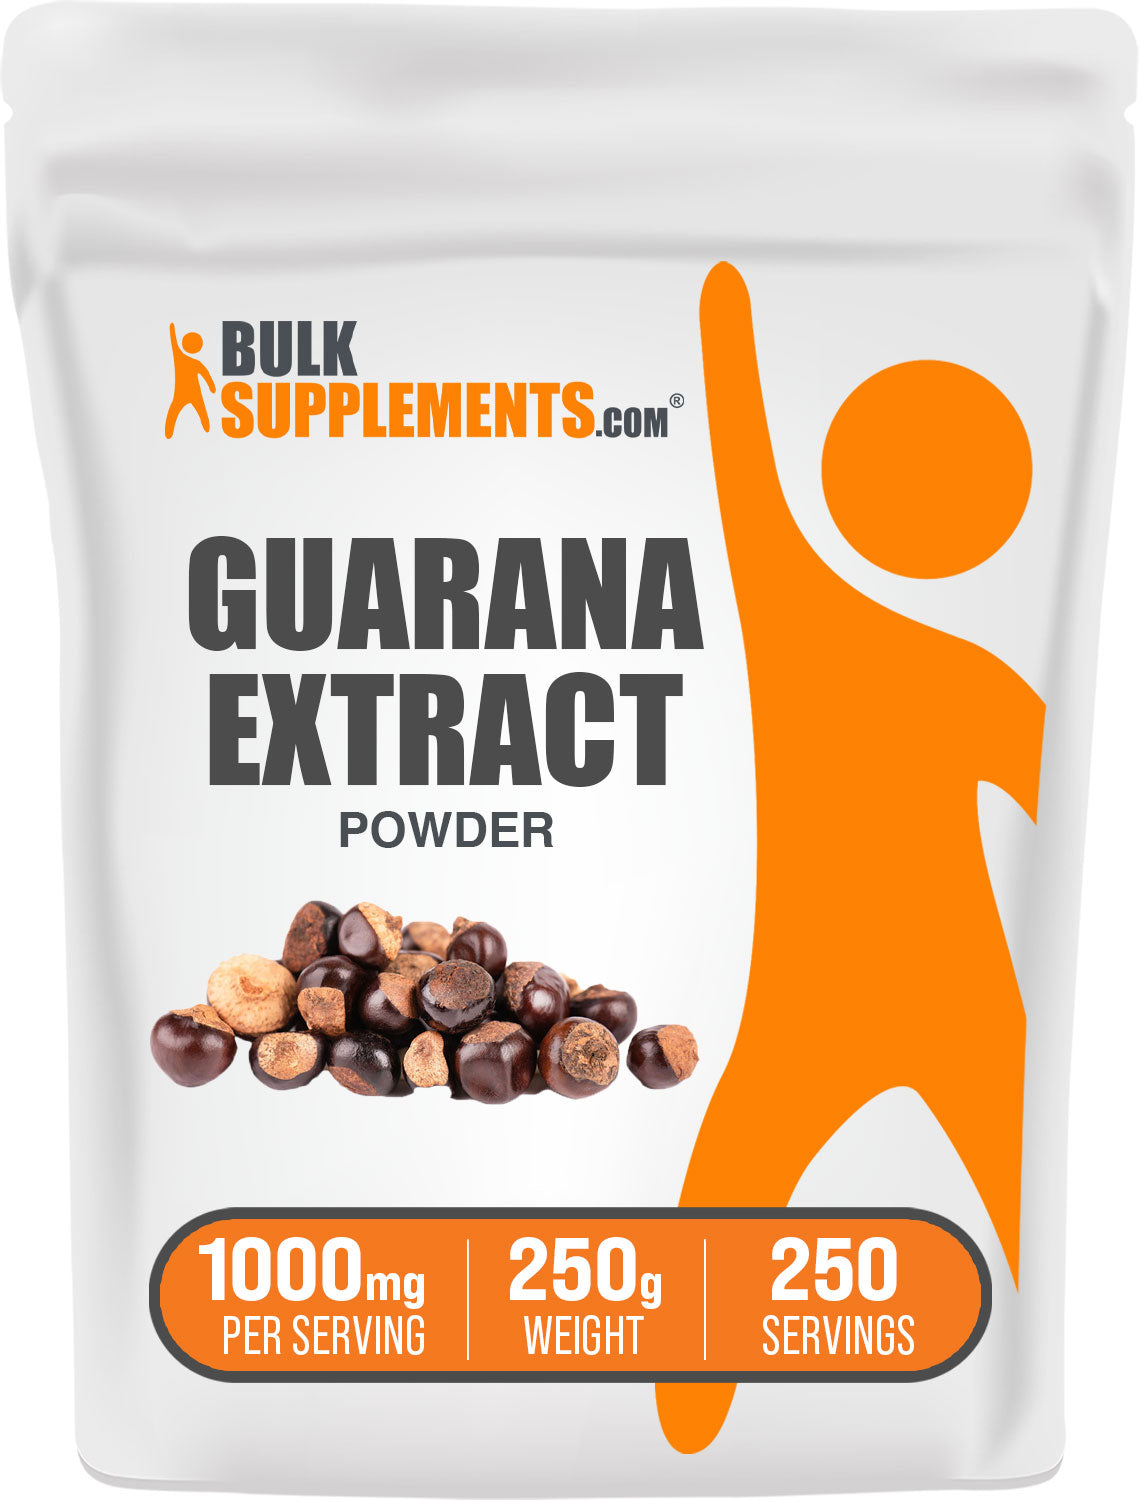 BulkSupplements.com Guarana Extract Powder 250g bag